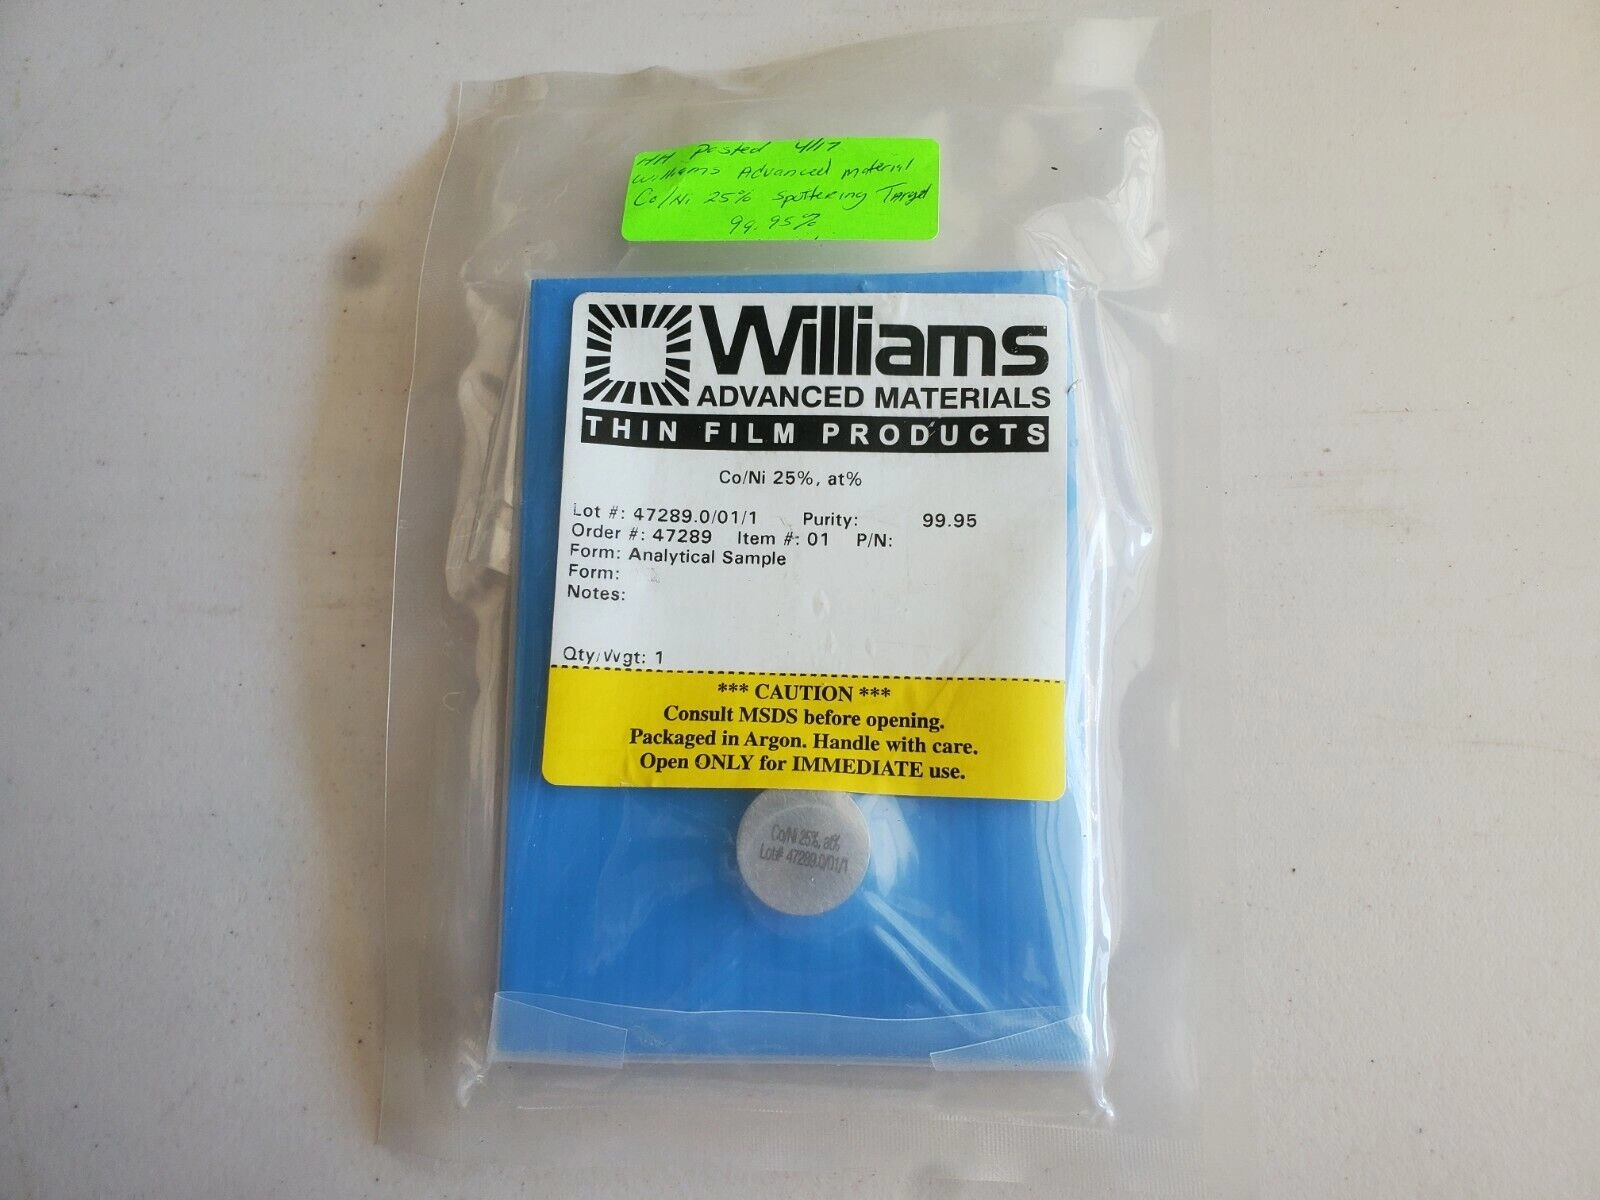 Williams Advanced Materials Co/Ni 25% 47289.0/01/1